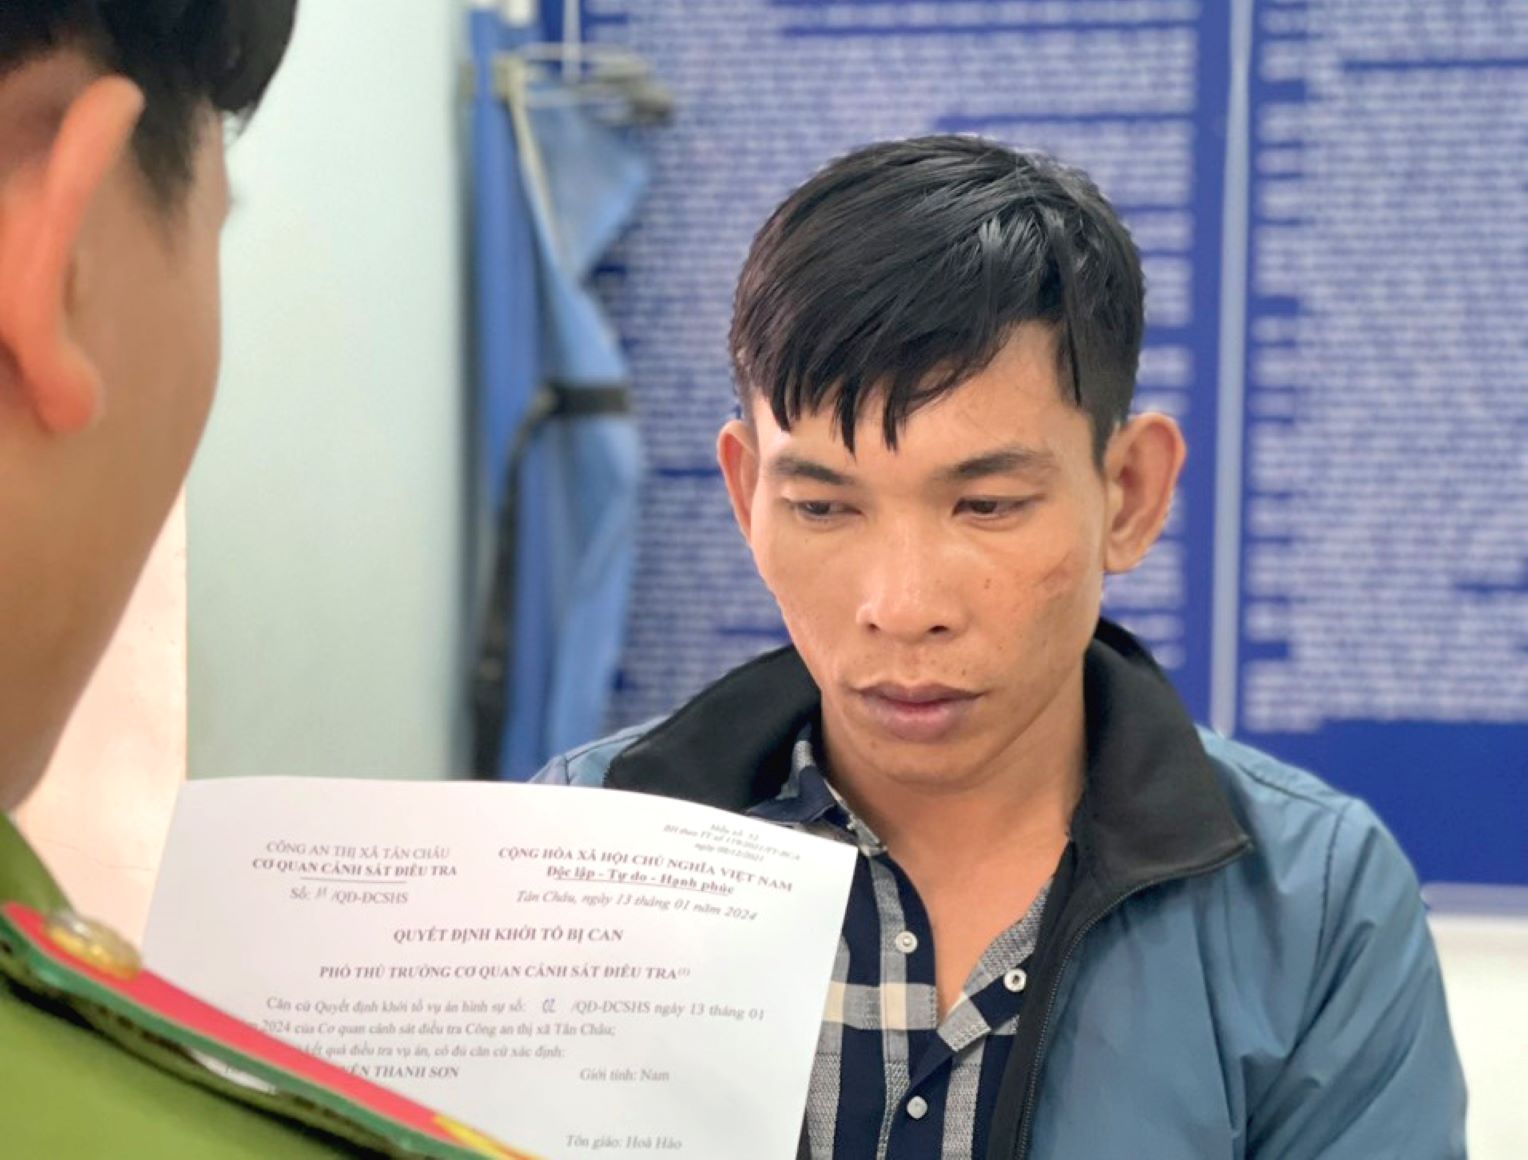 Công bố Quyết định khởi tố, lệnh tạm giam đối tượng Nguyễn Thanh Sơn về tội trộm cắp. Ảnh: Nghiêm Túc